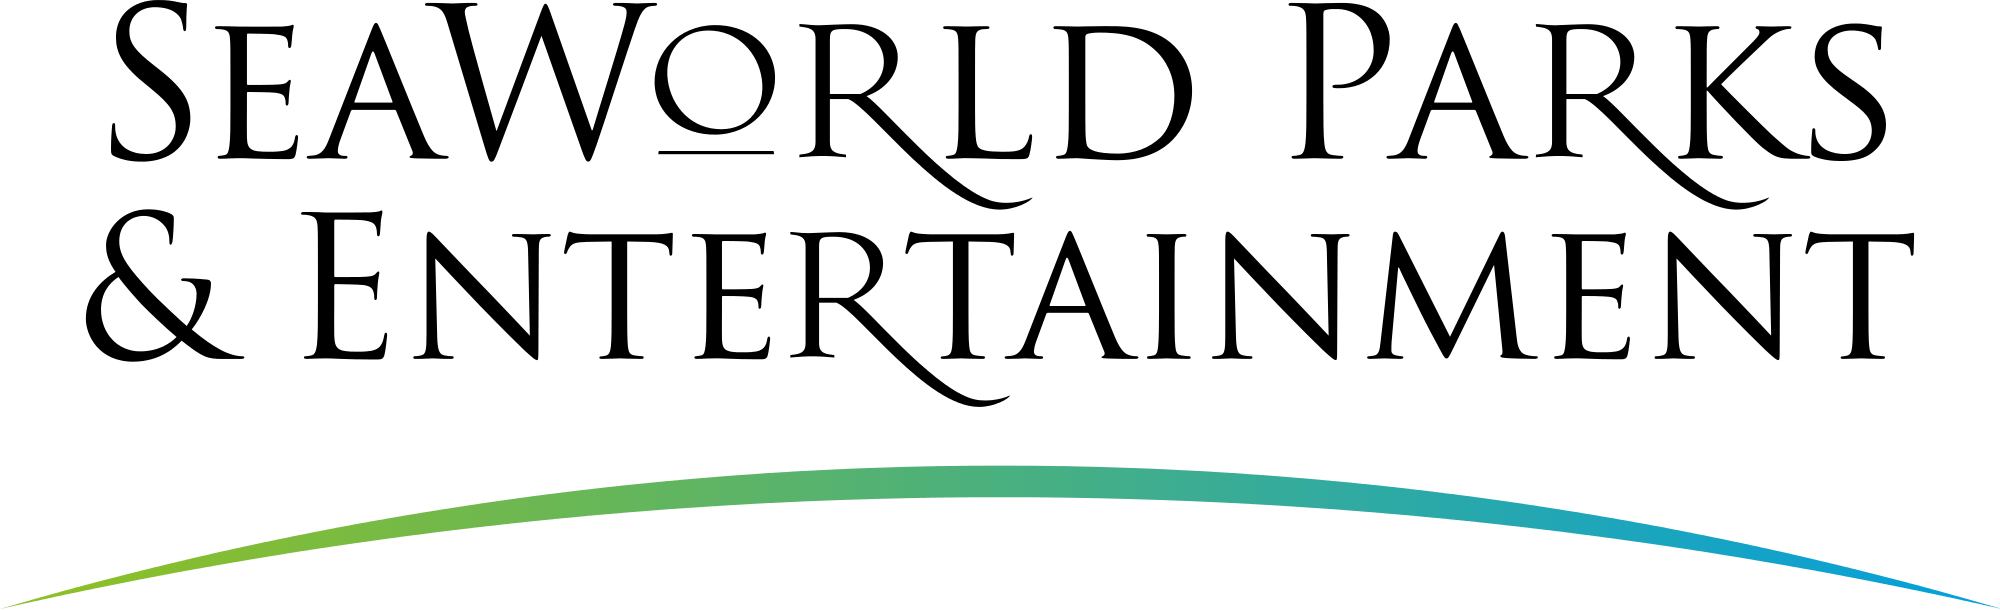 SeaWorld Logo - SeaWorld Parks & Entertainment logo.svg